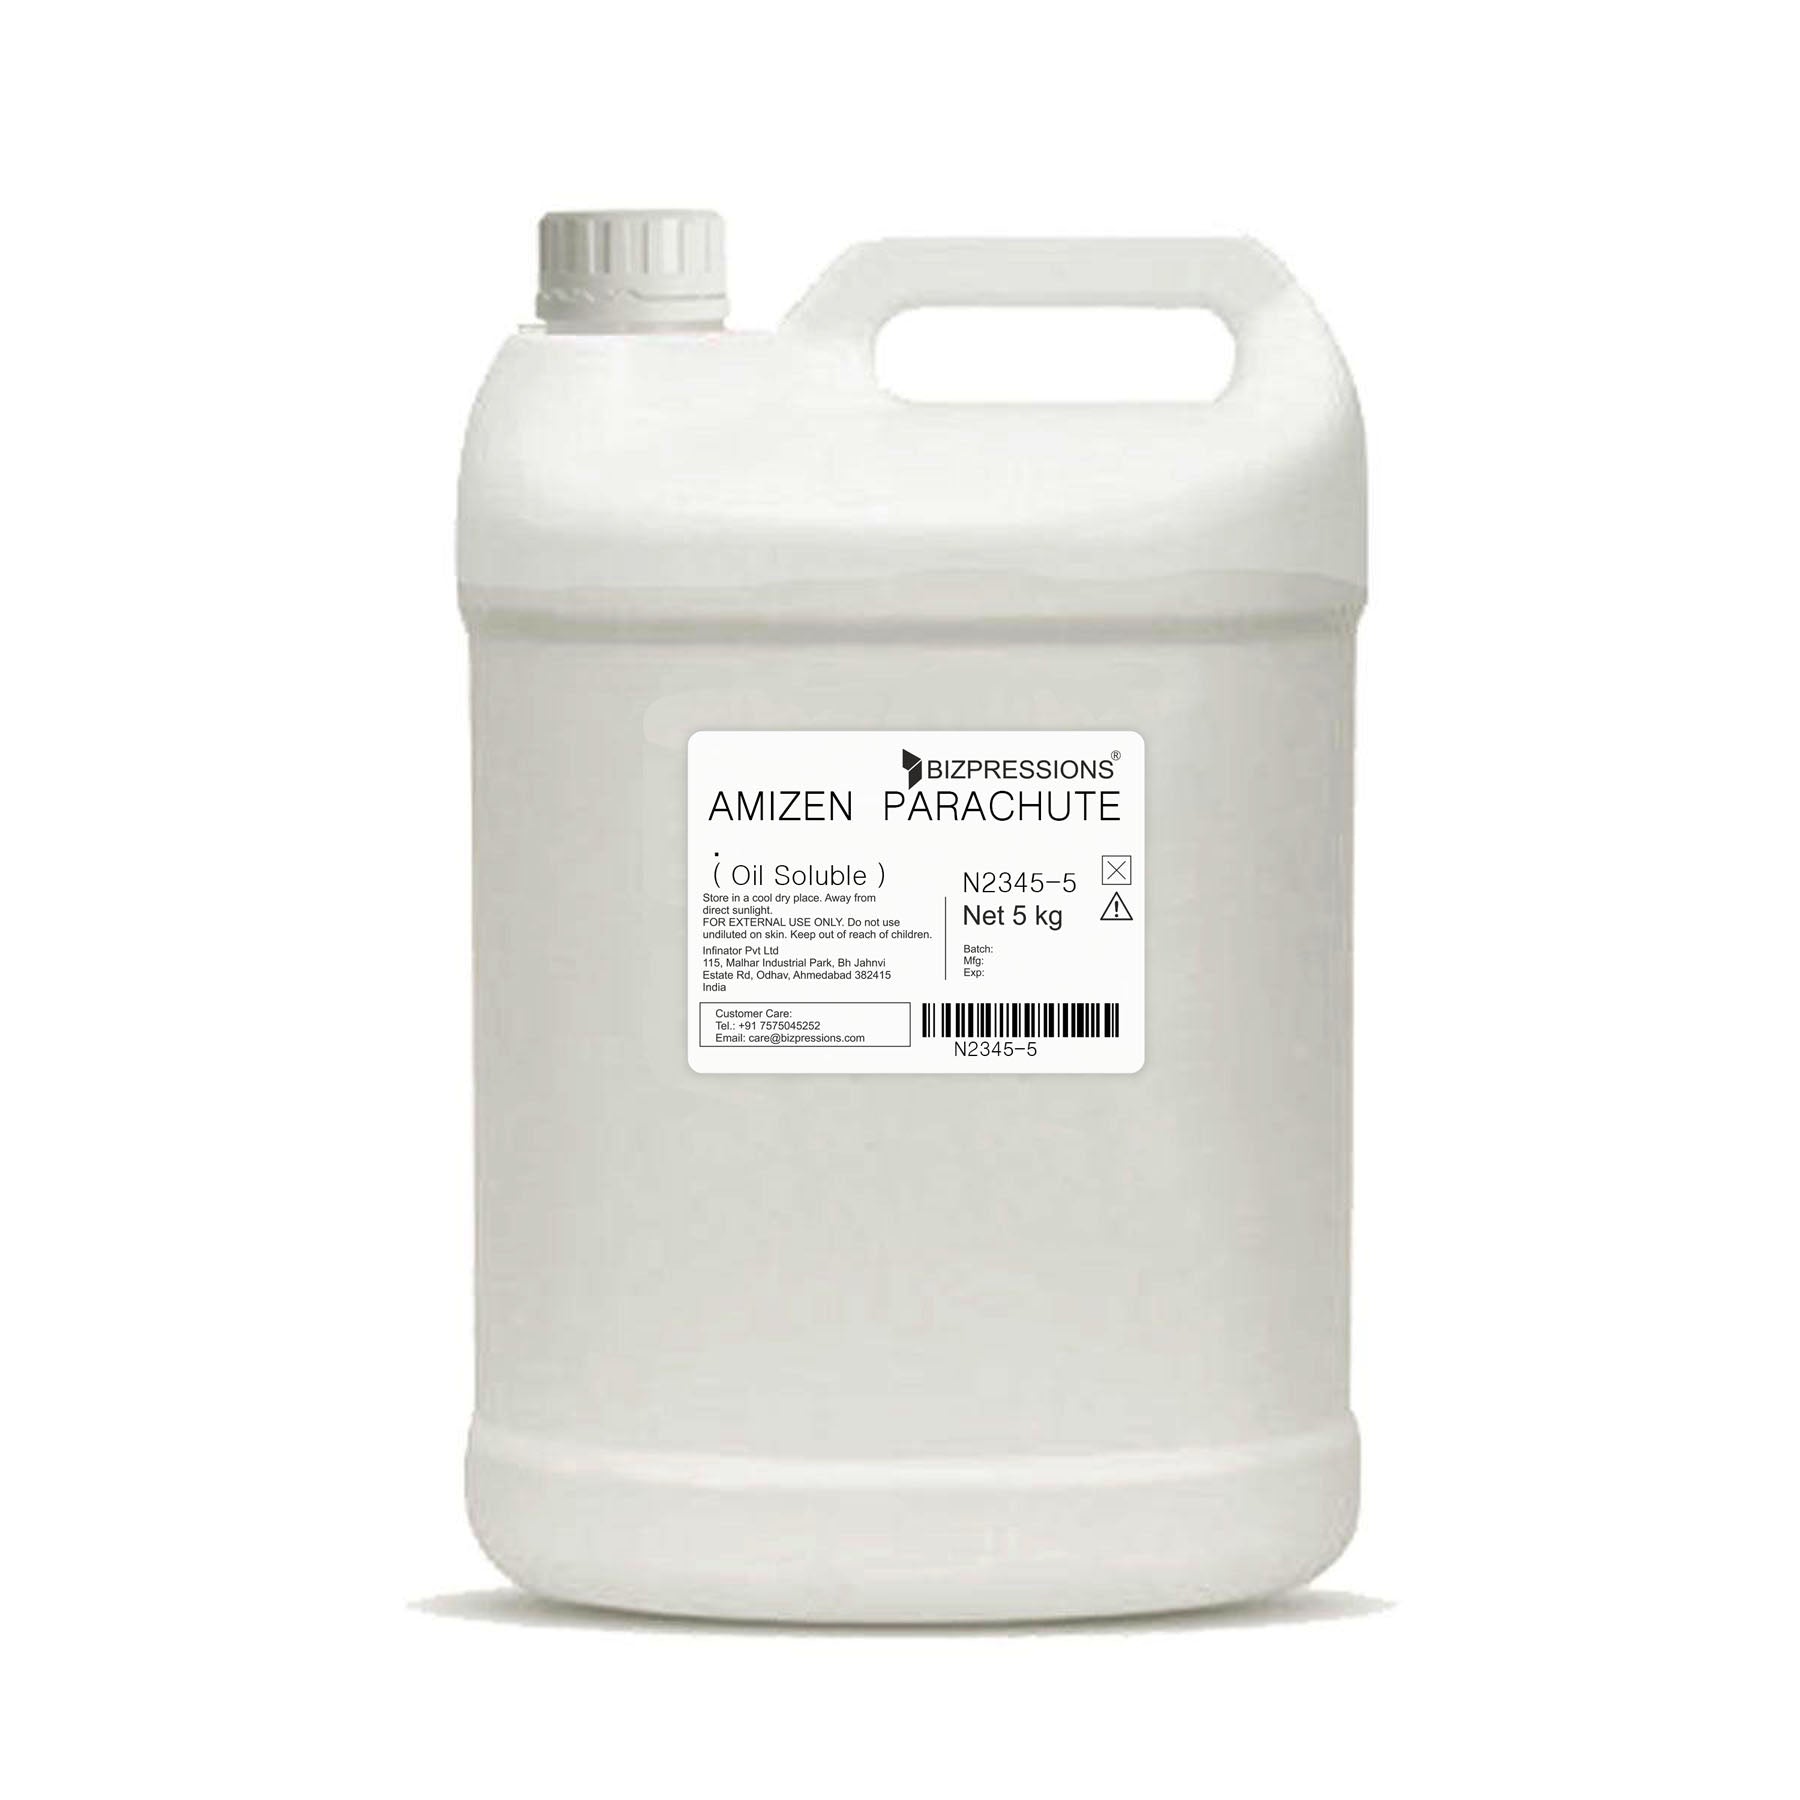 AMIZEN PARACHUTE - Fragrance ( Oil Soluble ) - 5 kg